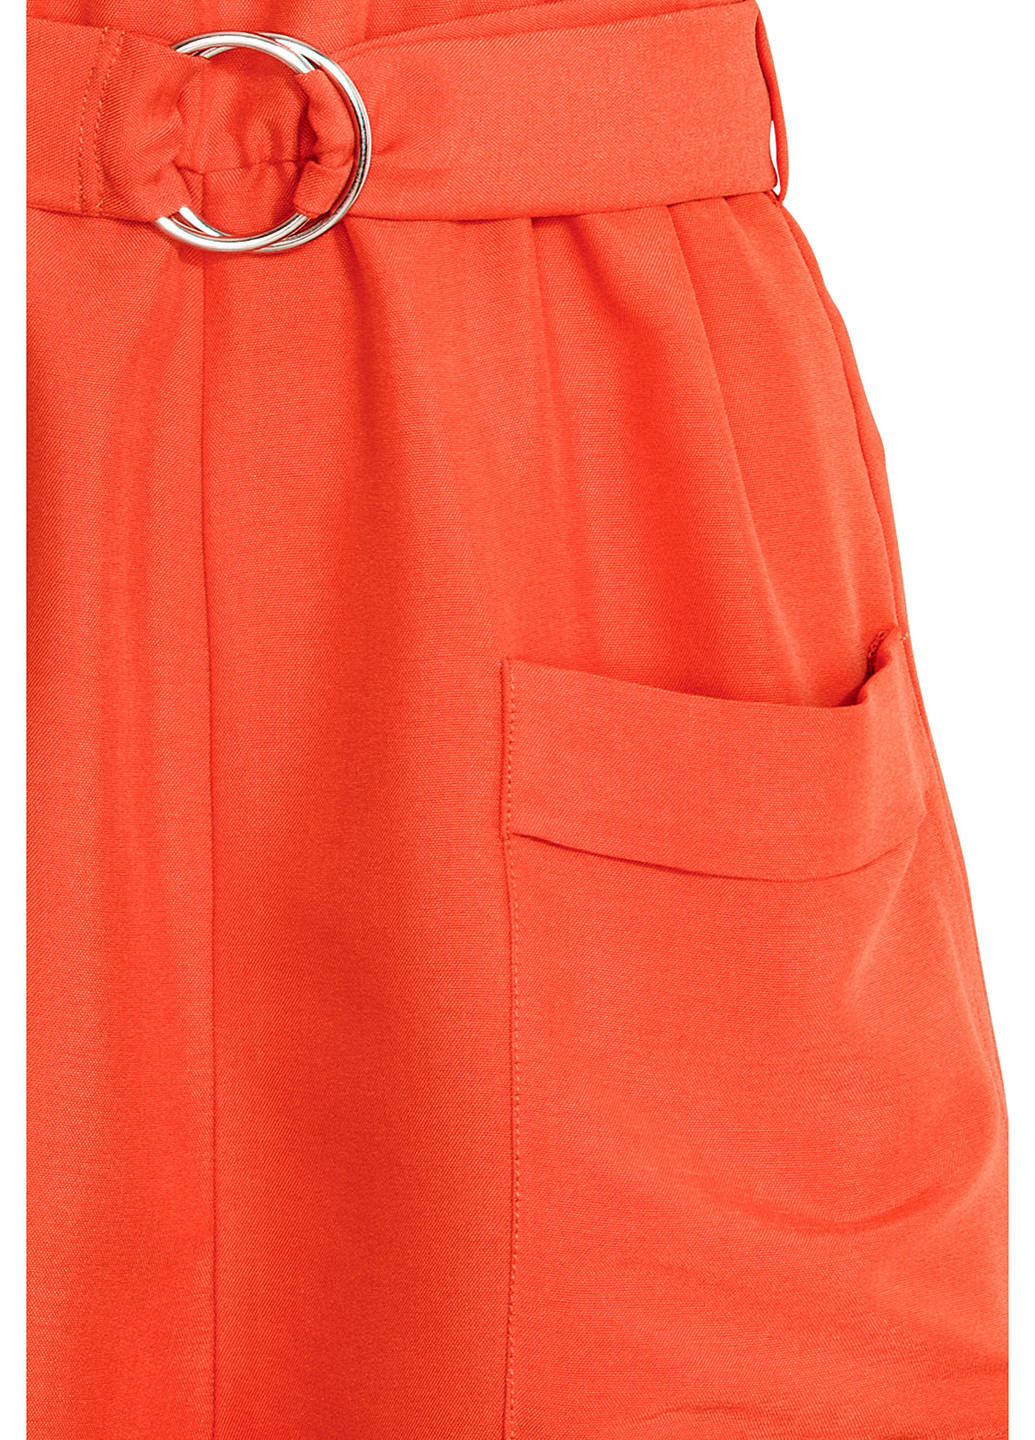 Комбинезон H&M комбинезон-шорты оранжевый кэжуал